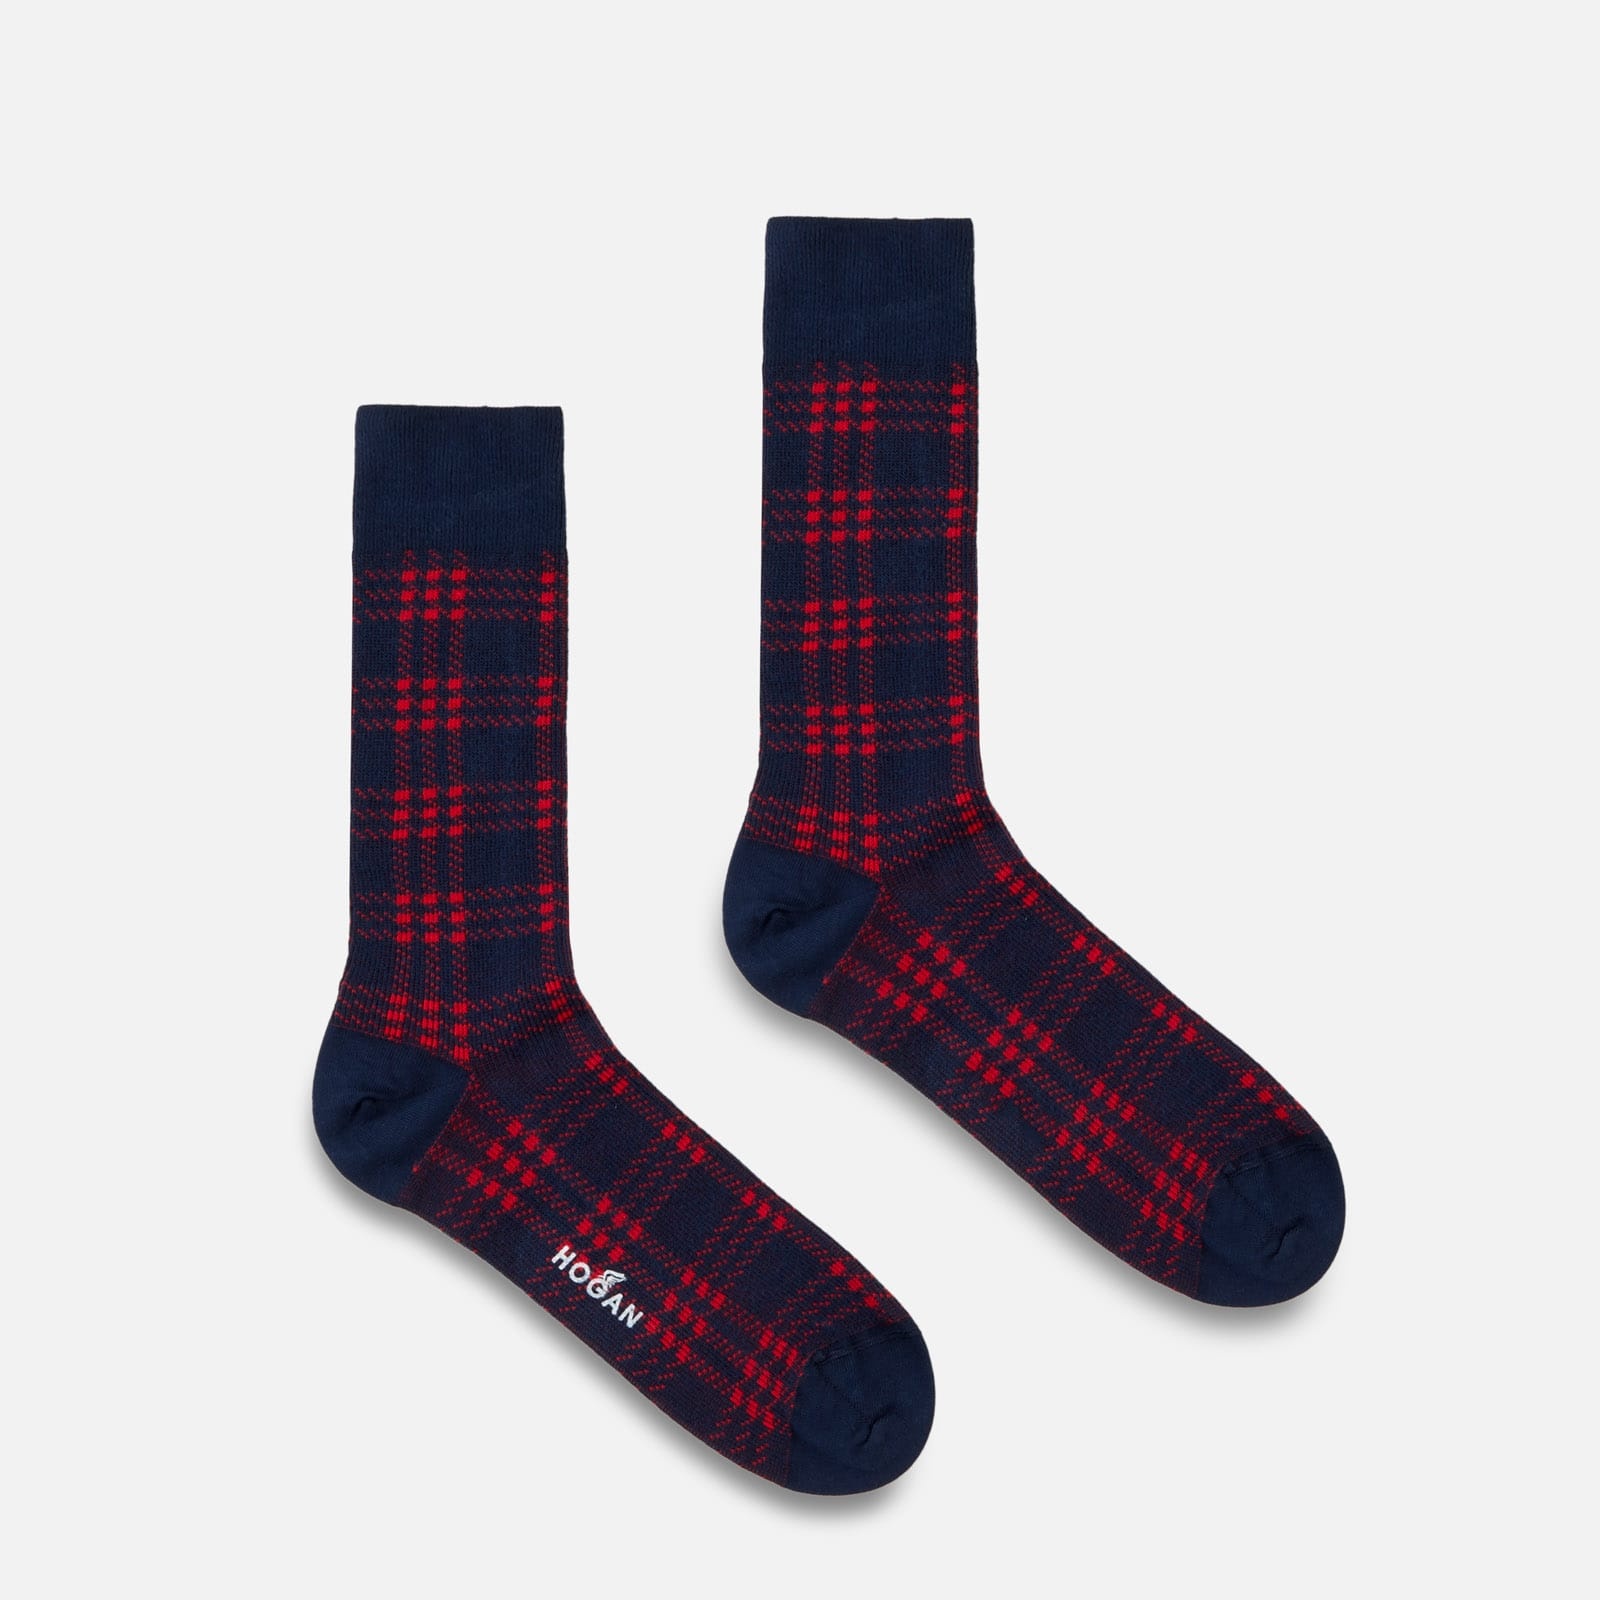 Socks Blue Red - 1